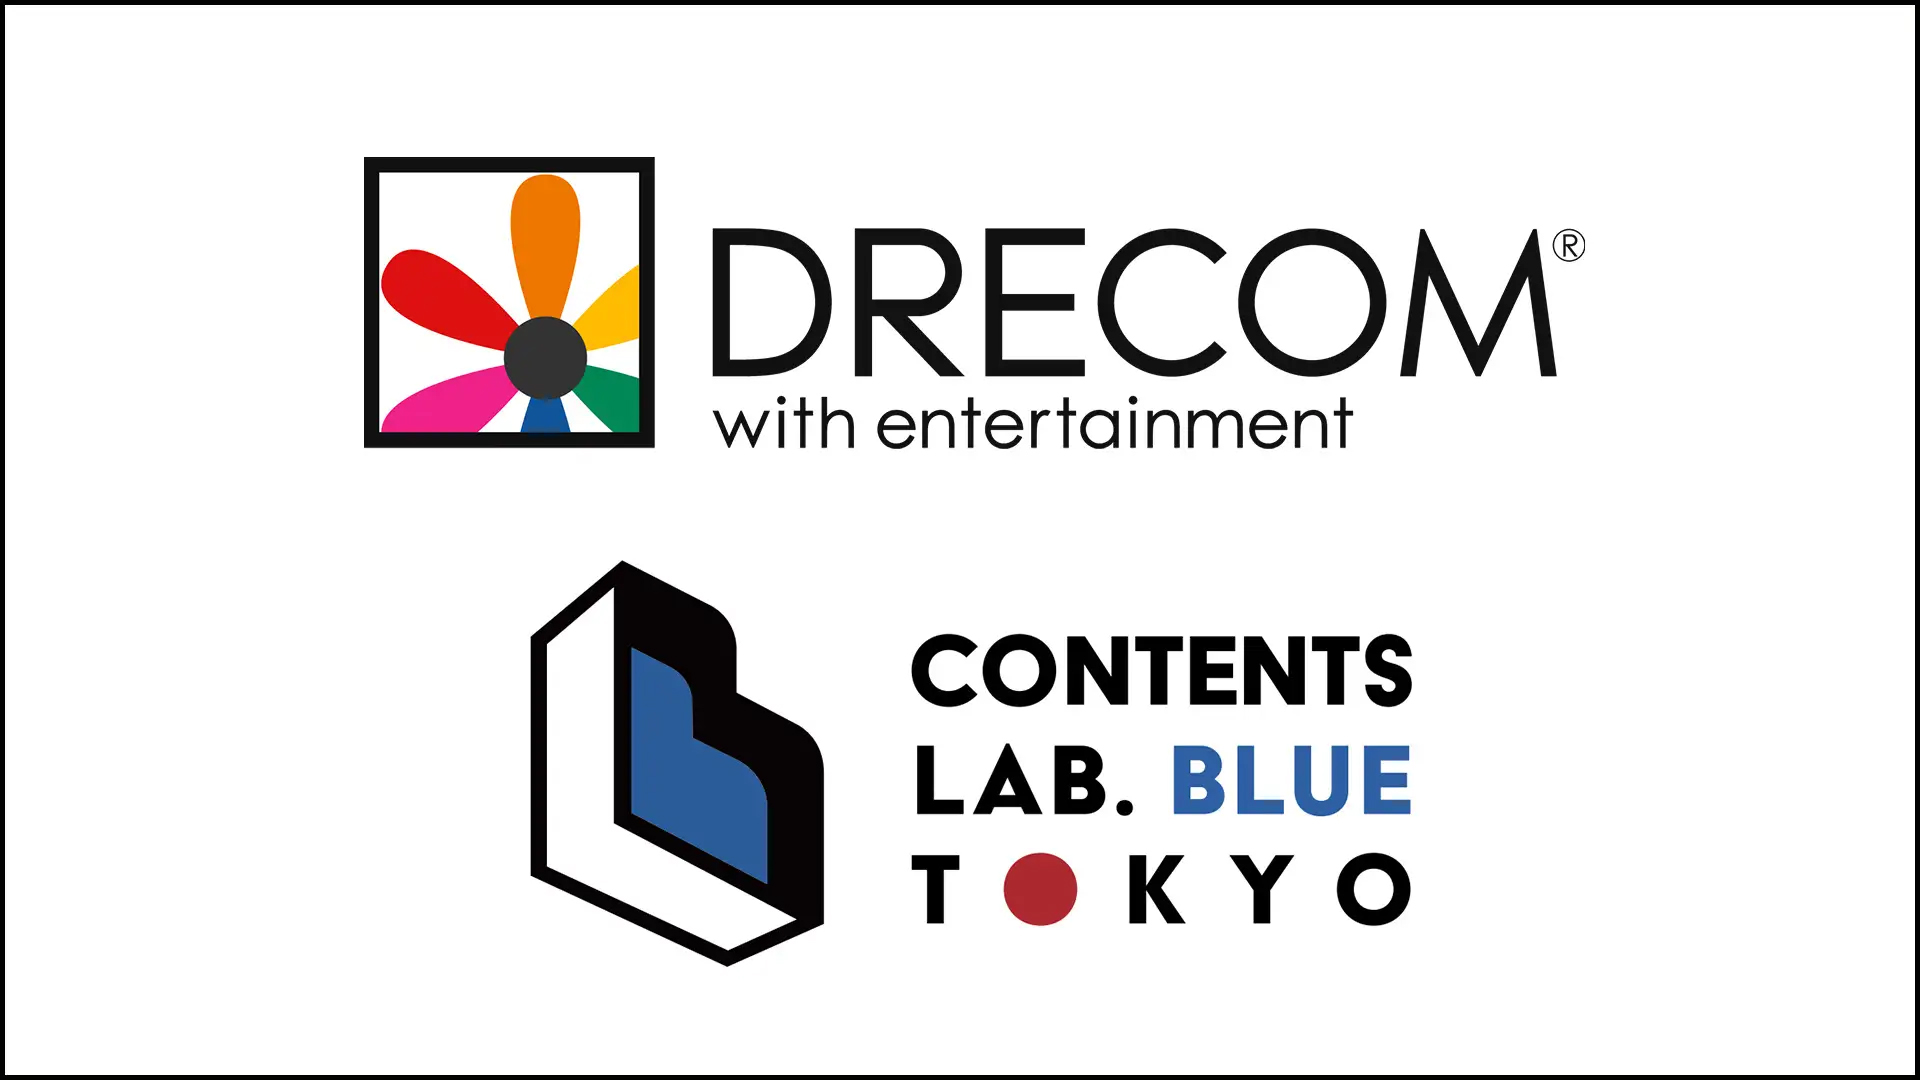 ドリコム、Contents Lab. Blue Tokyoとwebtoon共同制作を開始